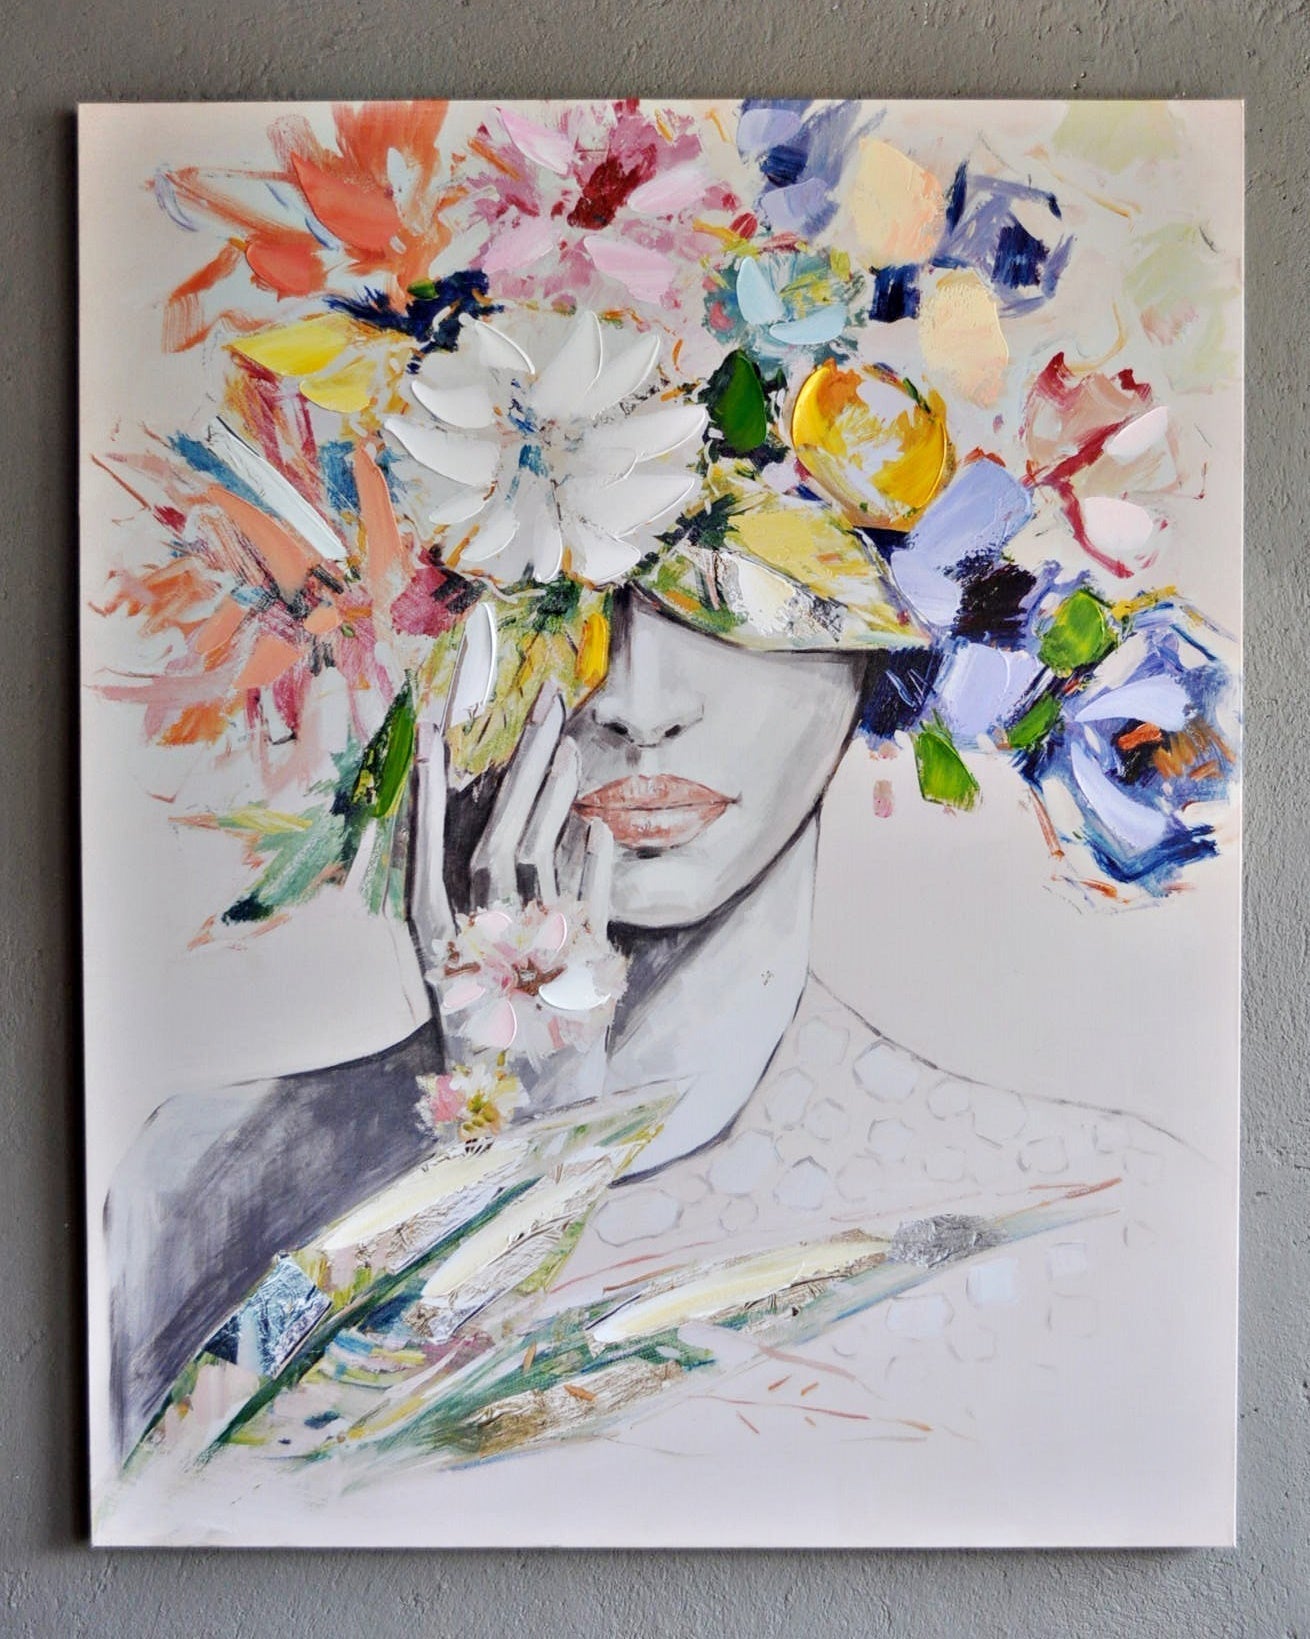 Leinwandbild "Frau Schönheit mit Blumenhut 100 x 80 cm Schöne Deko